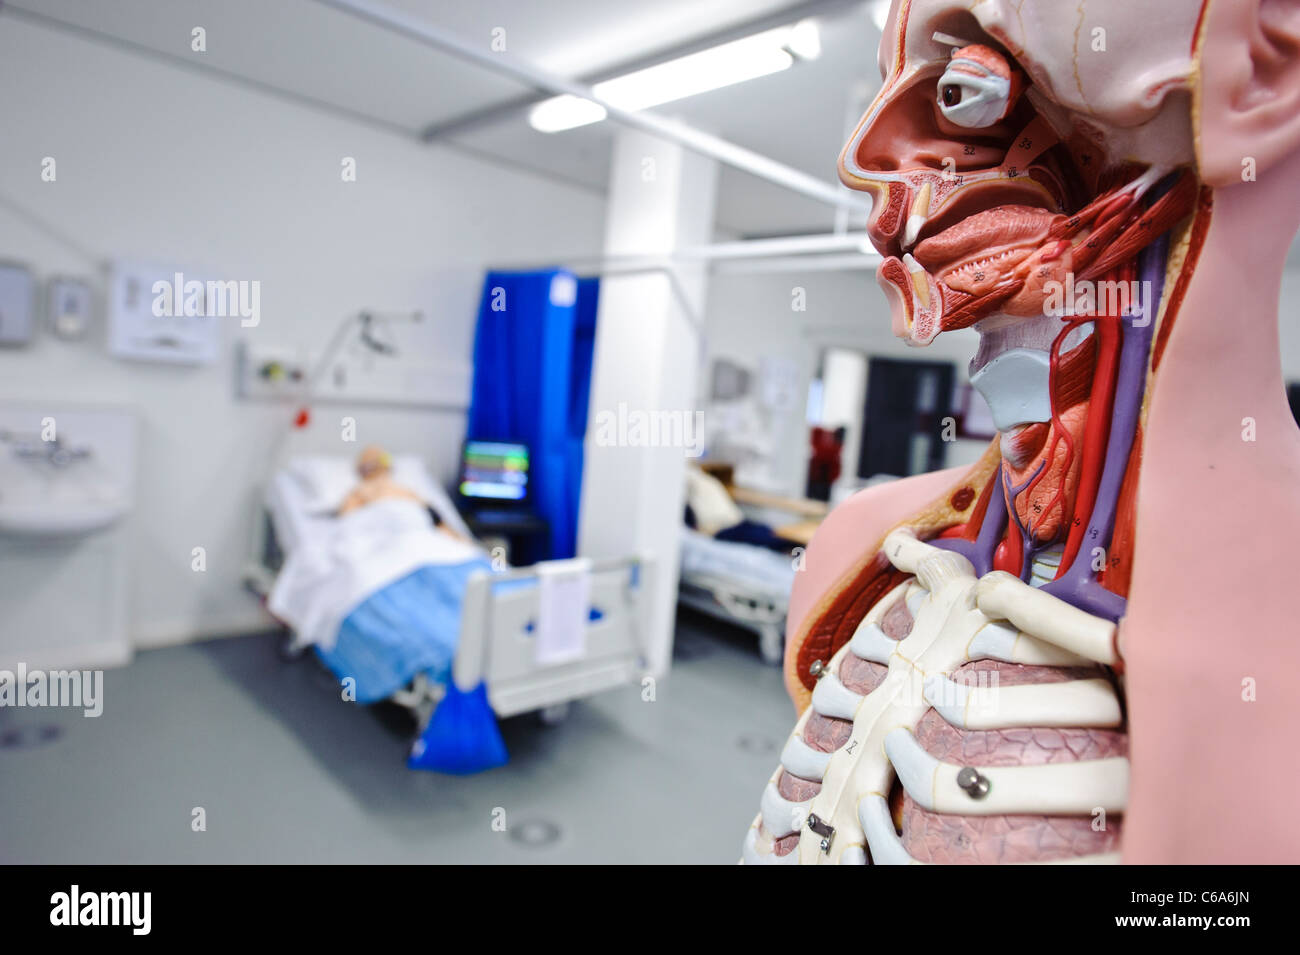 Anatomia umana modello anatomico ospedale impostando le competenze cliniche di laboratorio del paziente fittizio nel letto Foto Stock